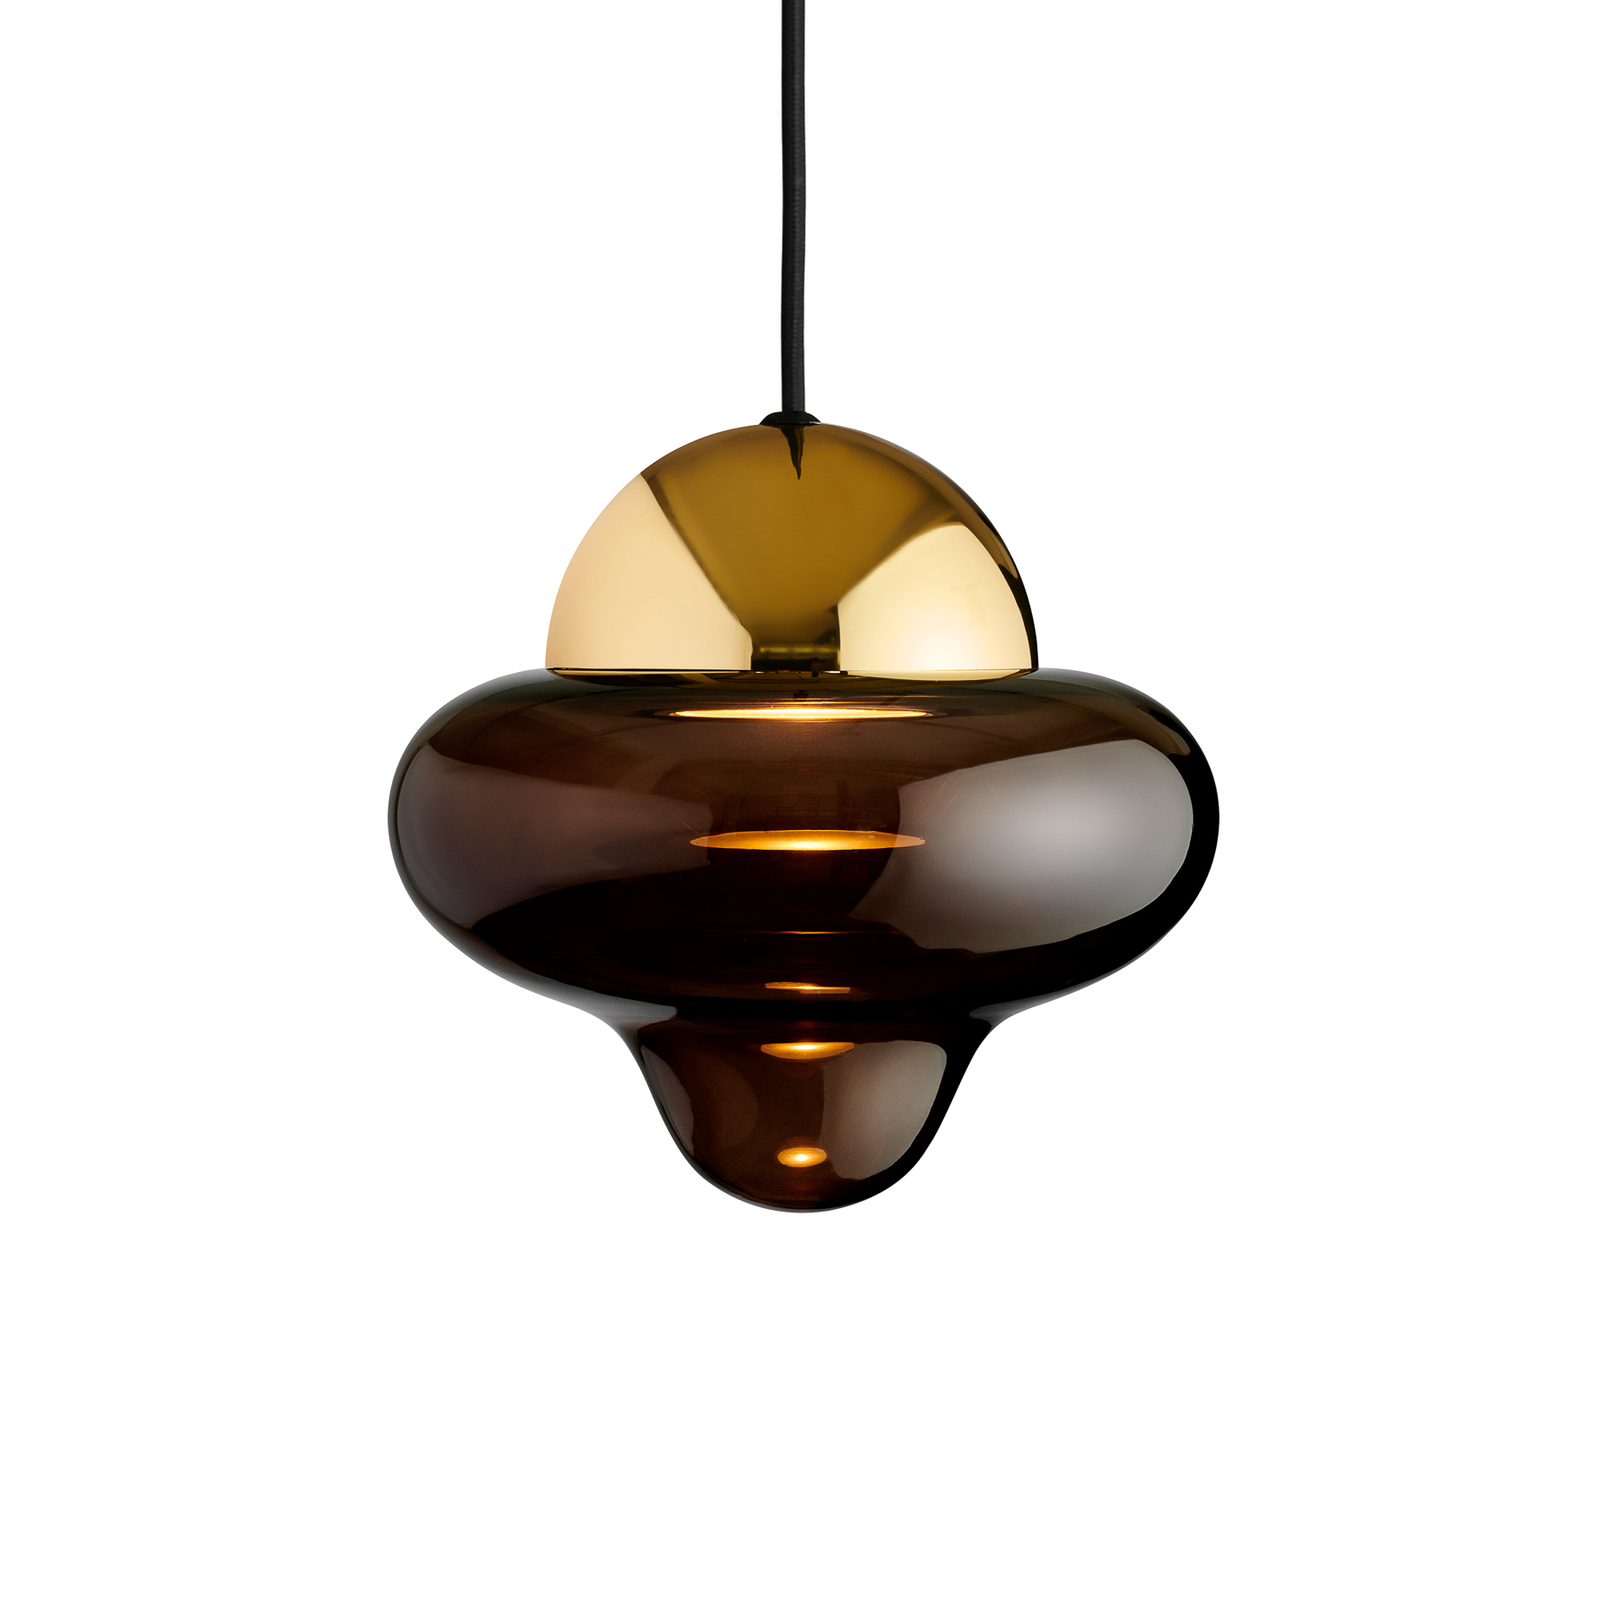 LED-Hängeleuchte Nutty, braun / goldfarben, Ø 18,5 cm, Glas